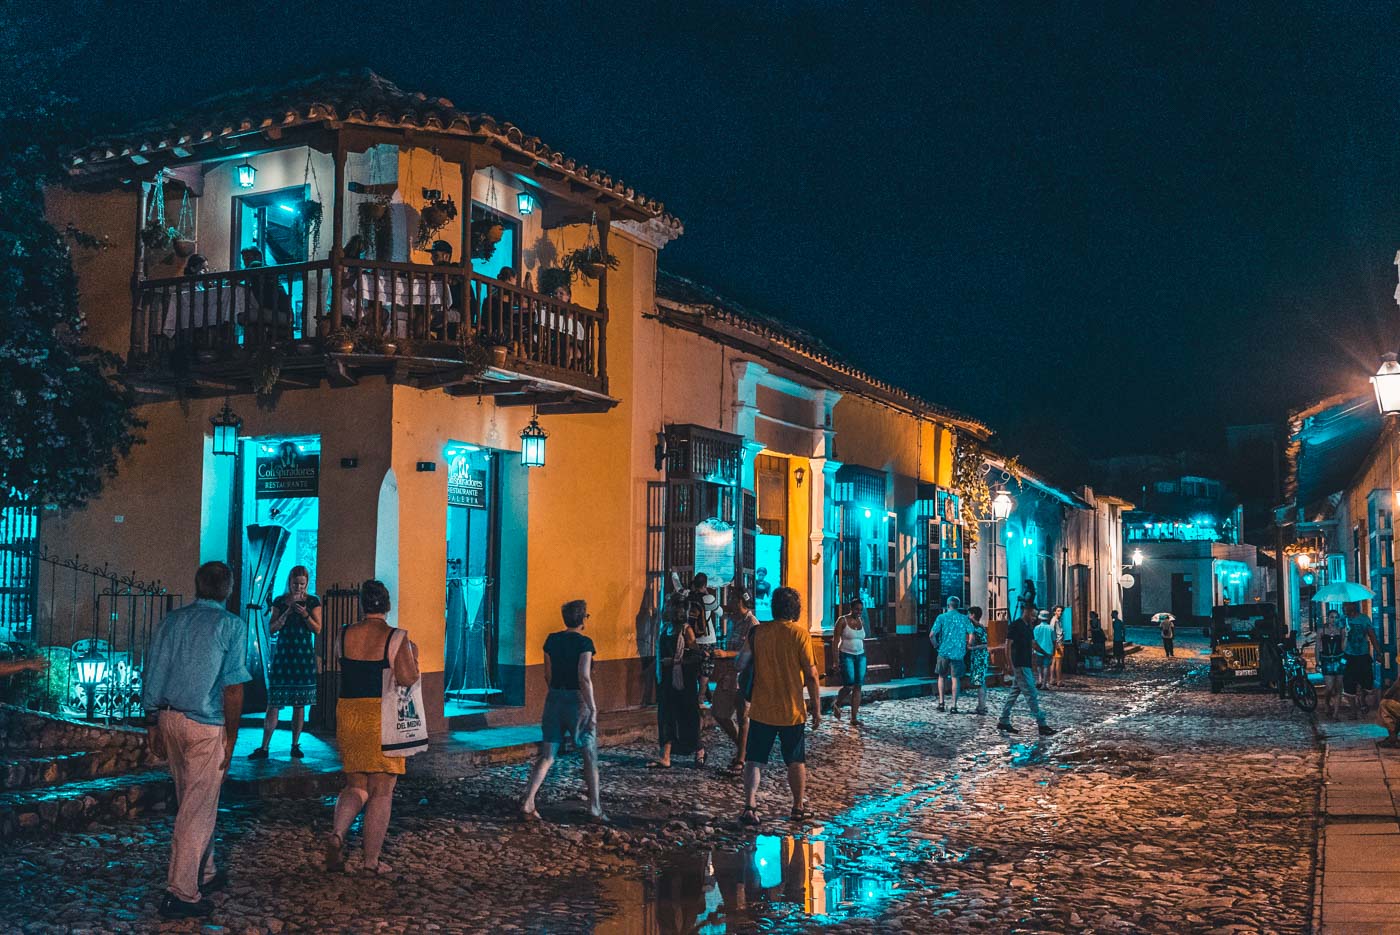 Night life in Cuba